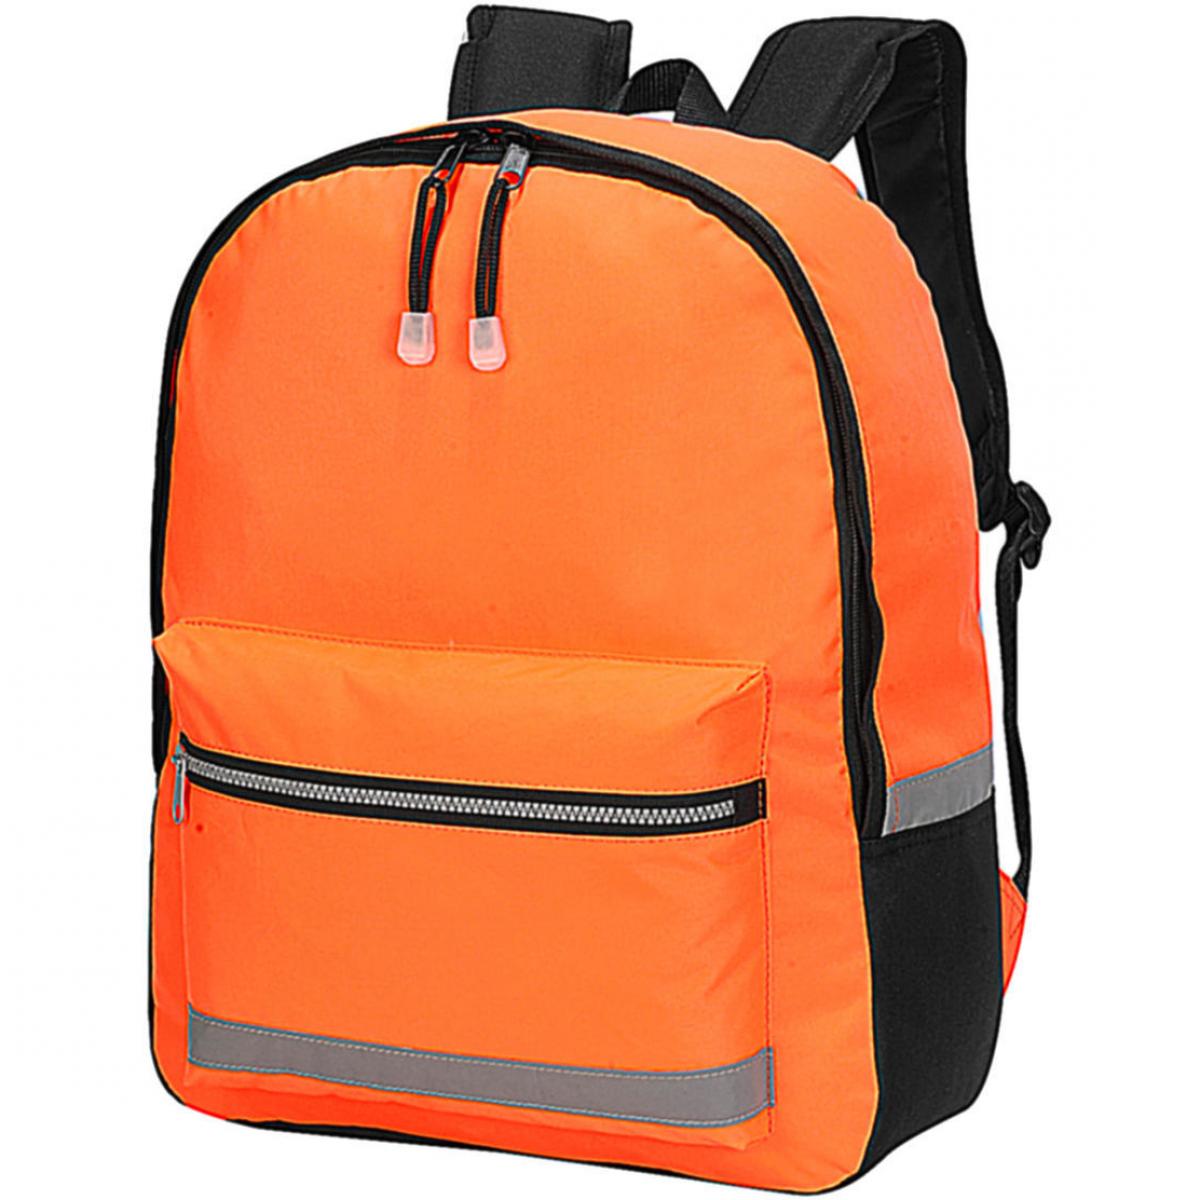 Hersteller: Shugon Herstellernummer: SH1340 Artikelbezeichnung: Gatwick Hi-Vis Backpack 33 x 42 x 13 cm Farbe: Hi-Vis Orange